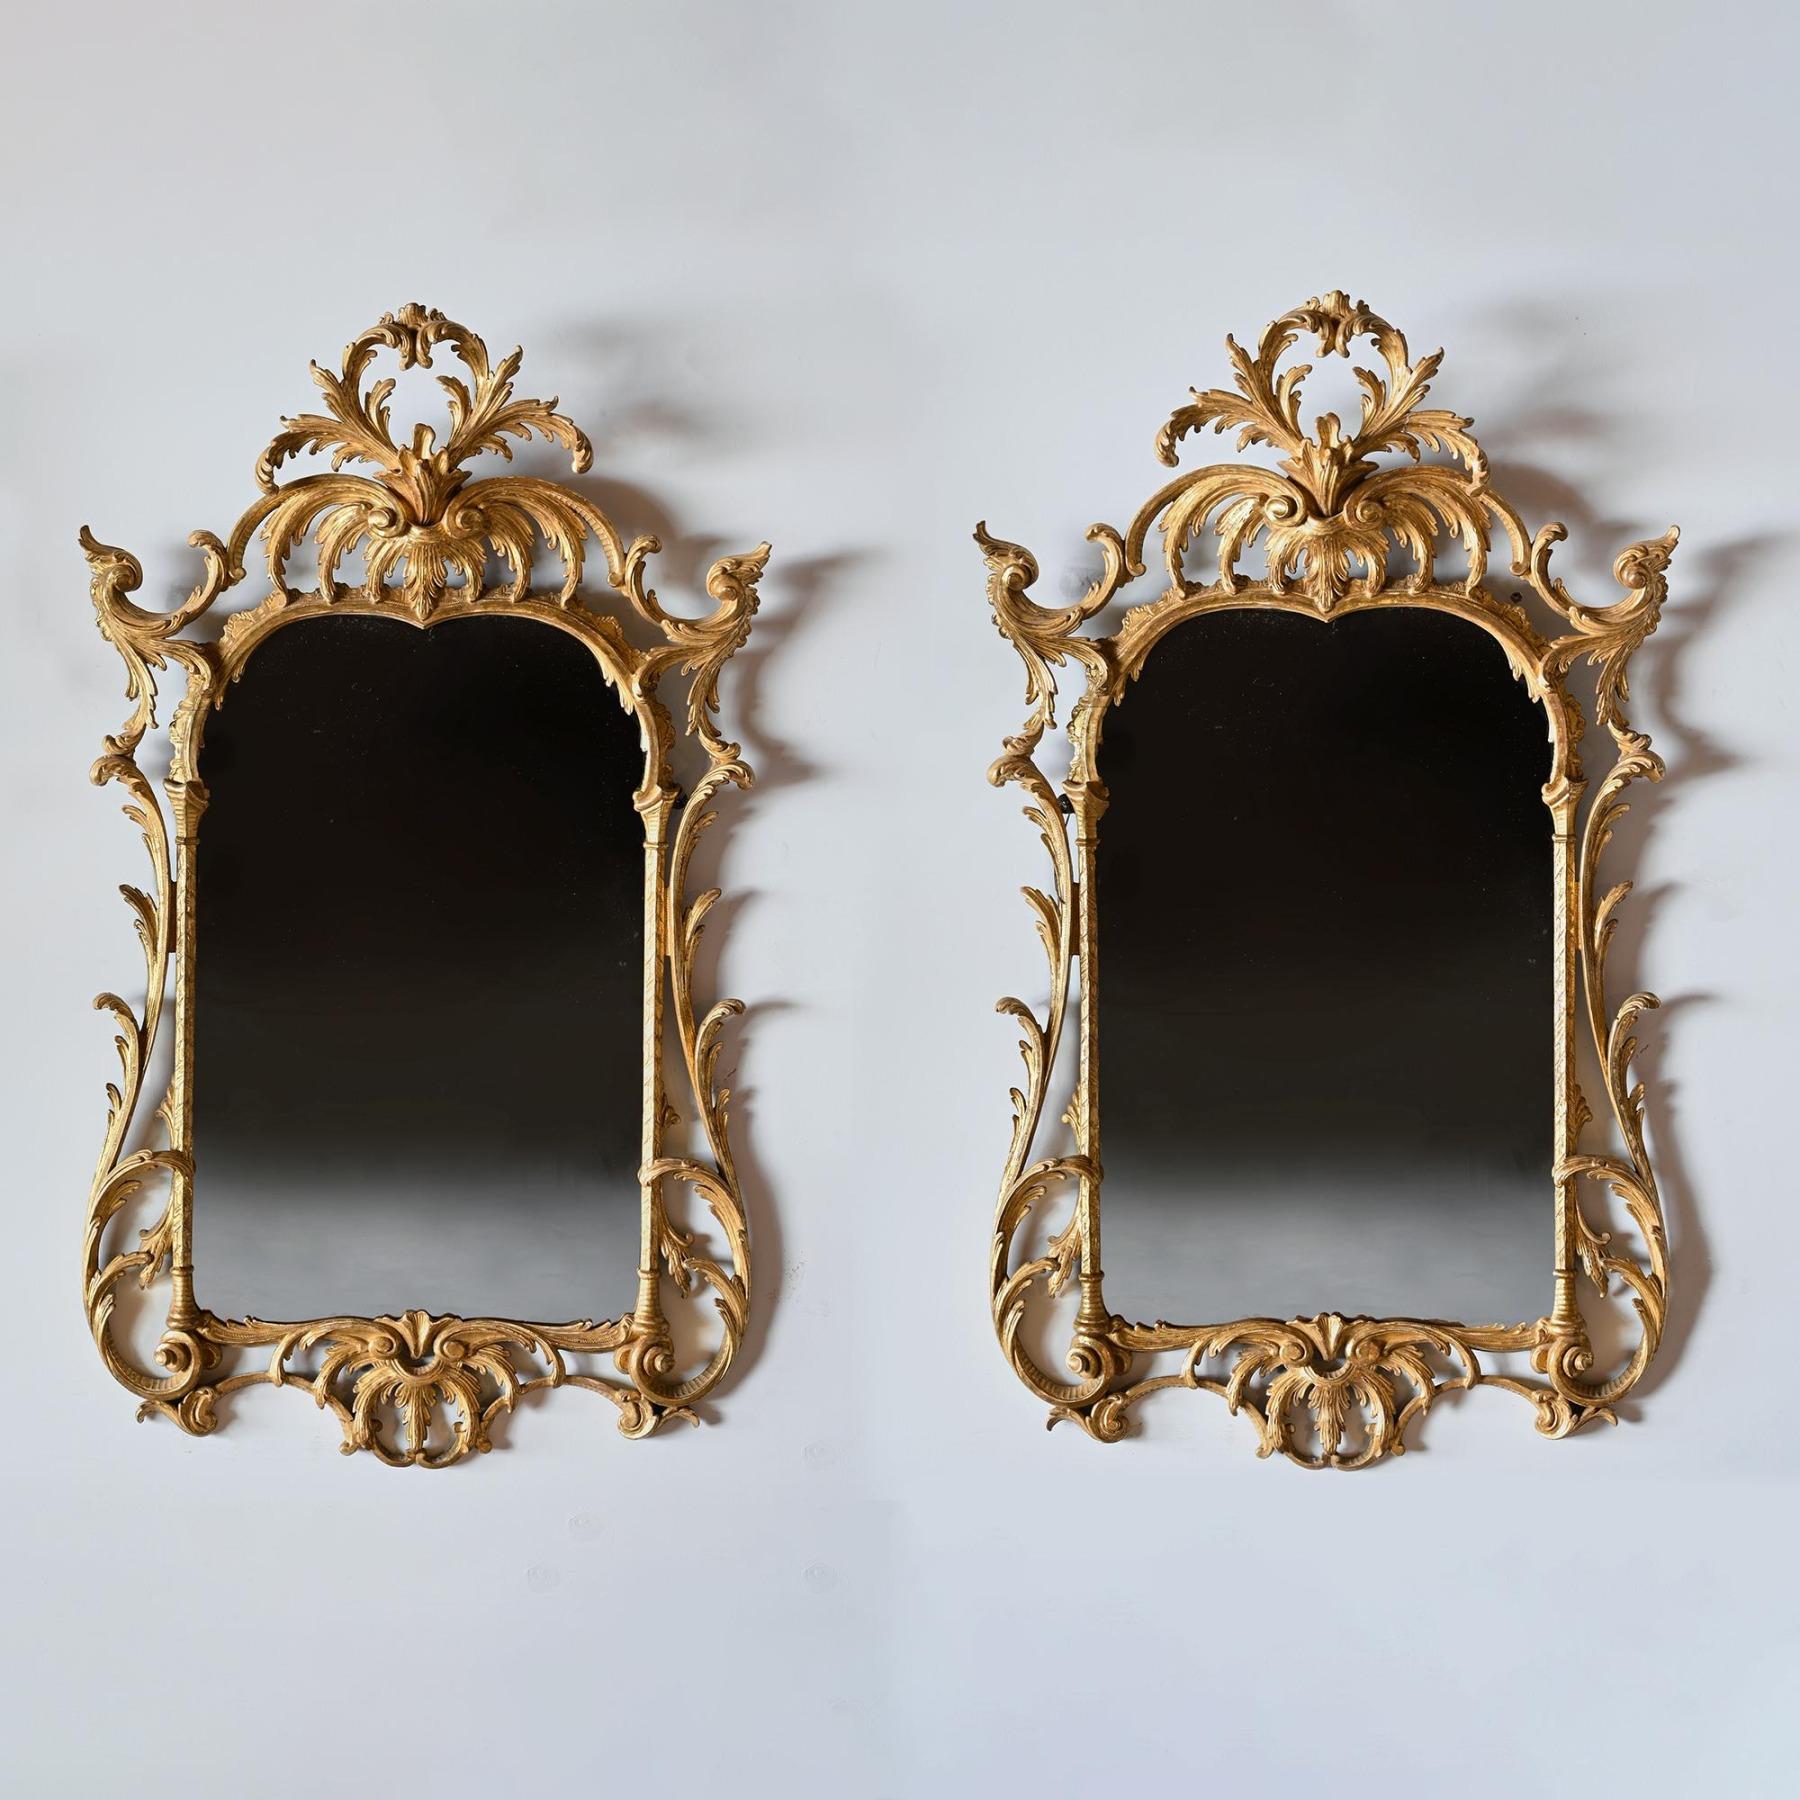 Début du 20ème siècle Paire de miroirs en bois doré de style rococo de la fin du XIXe siècle